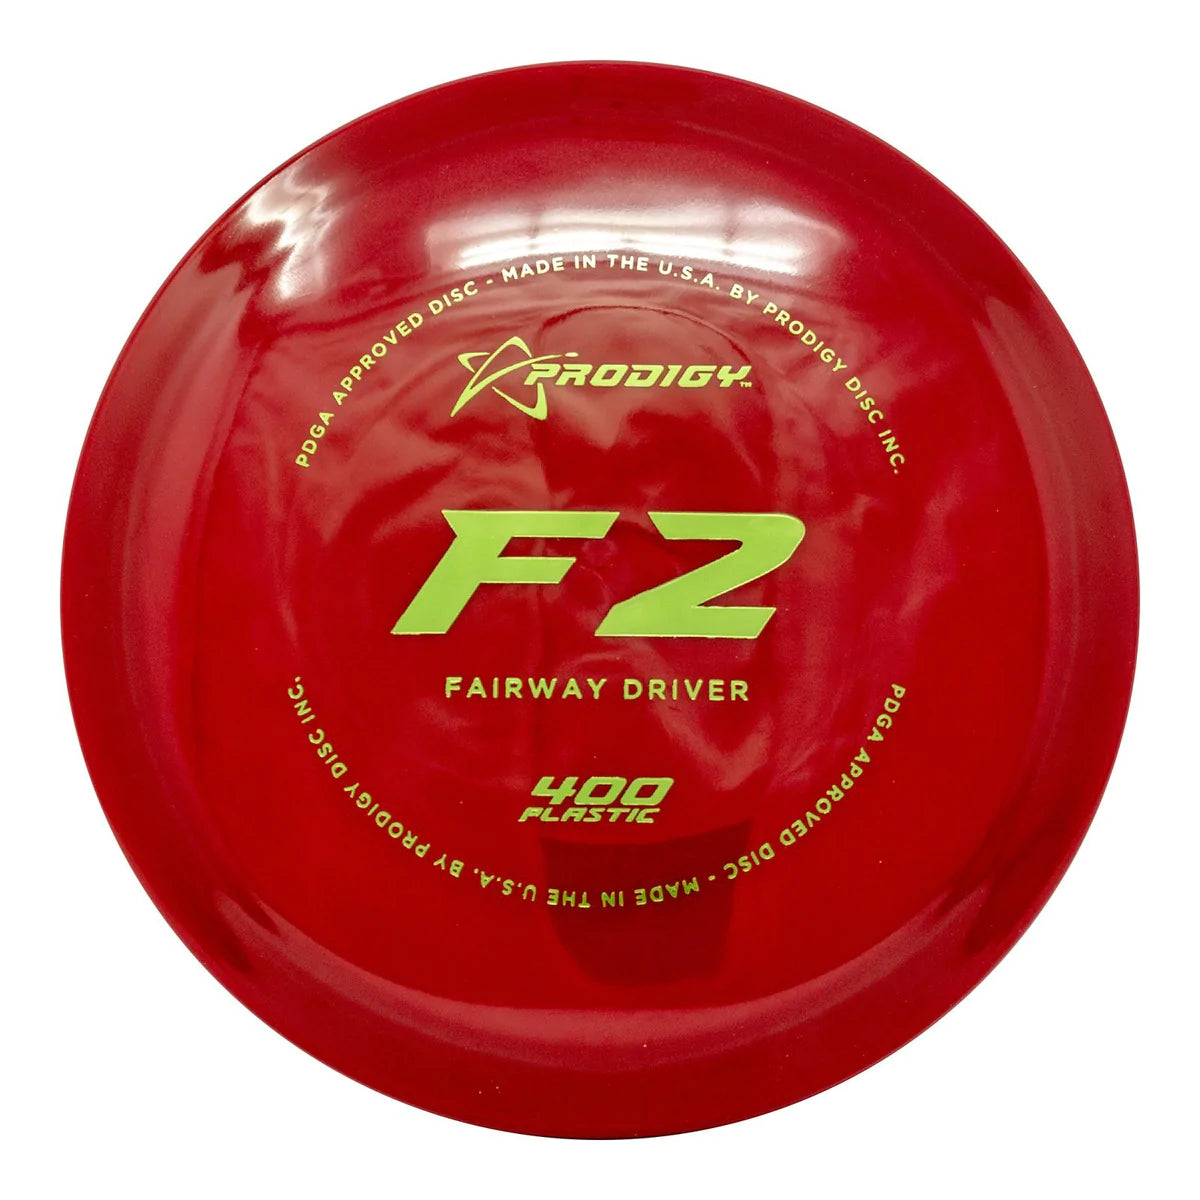 F2 - 400 Plastic